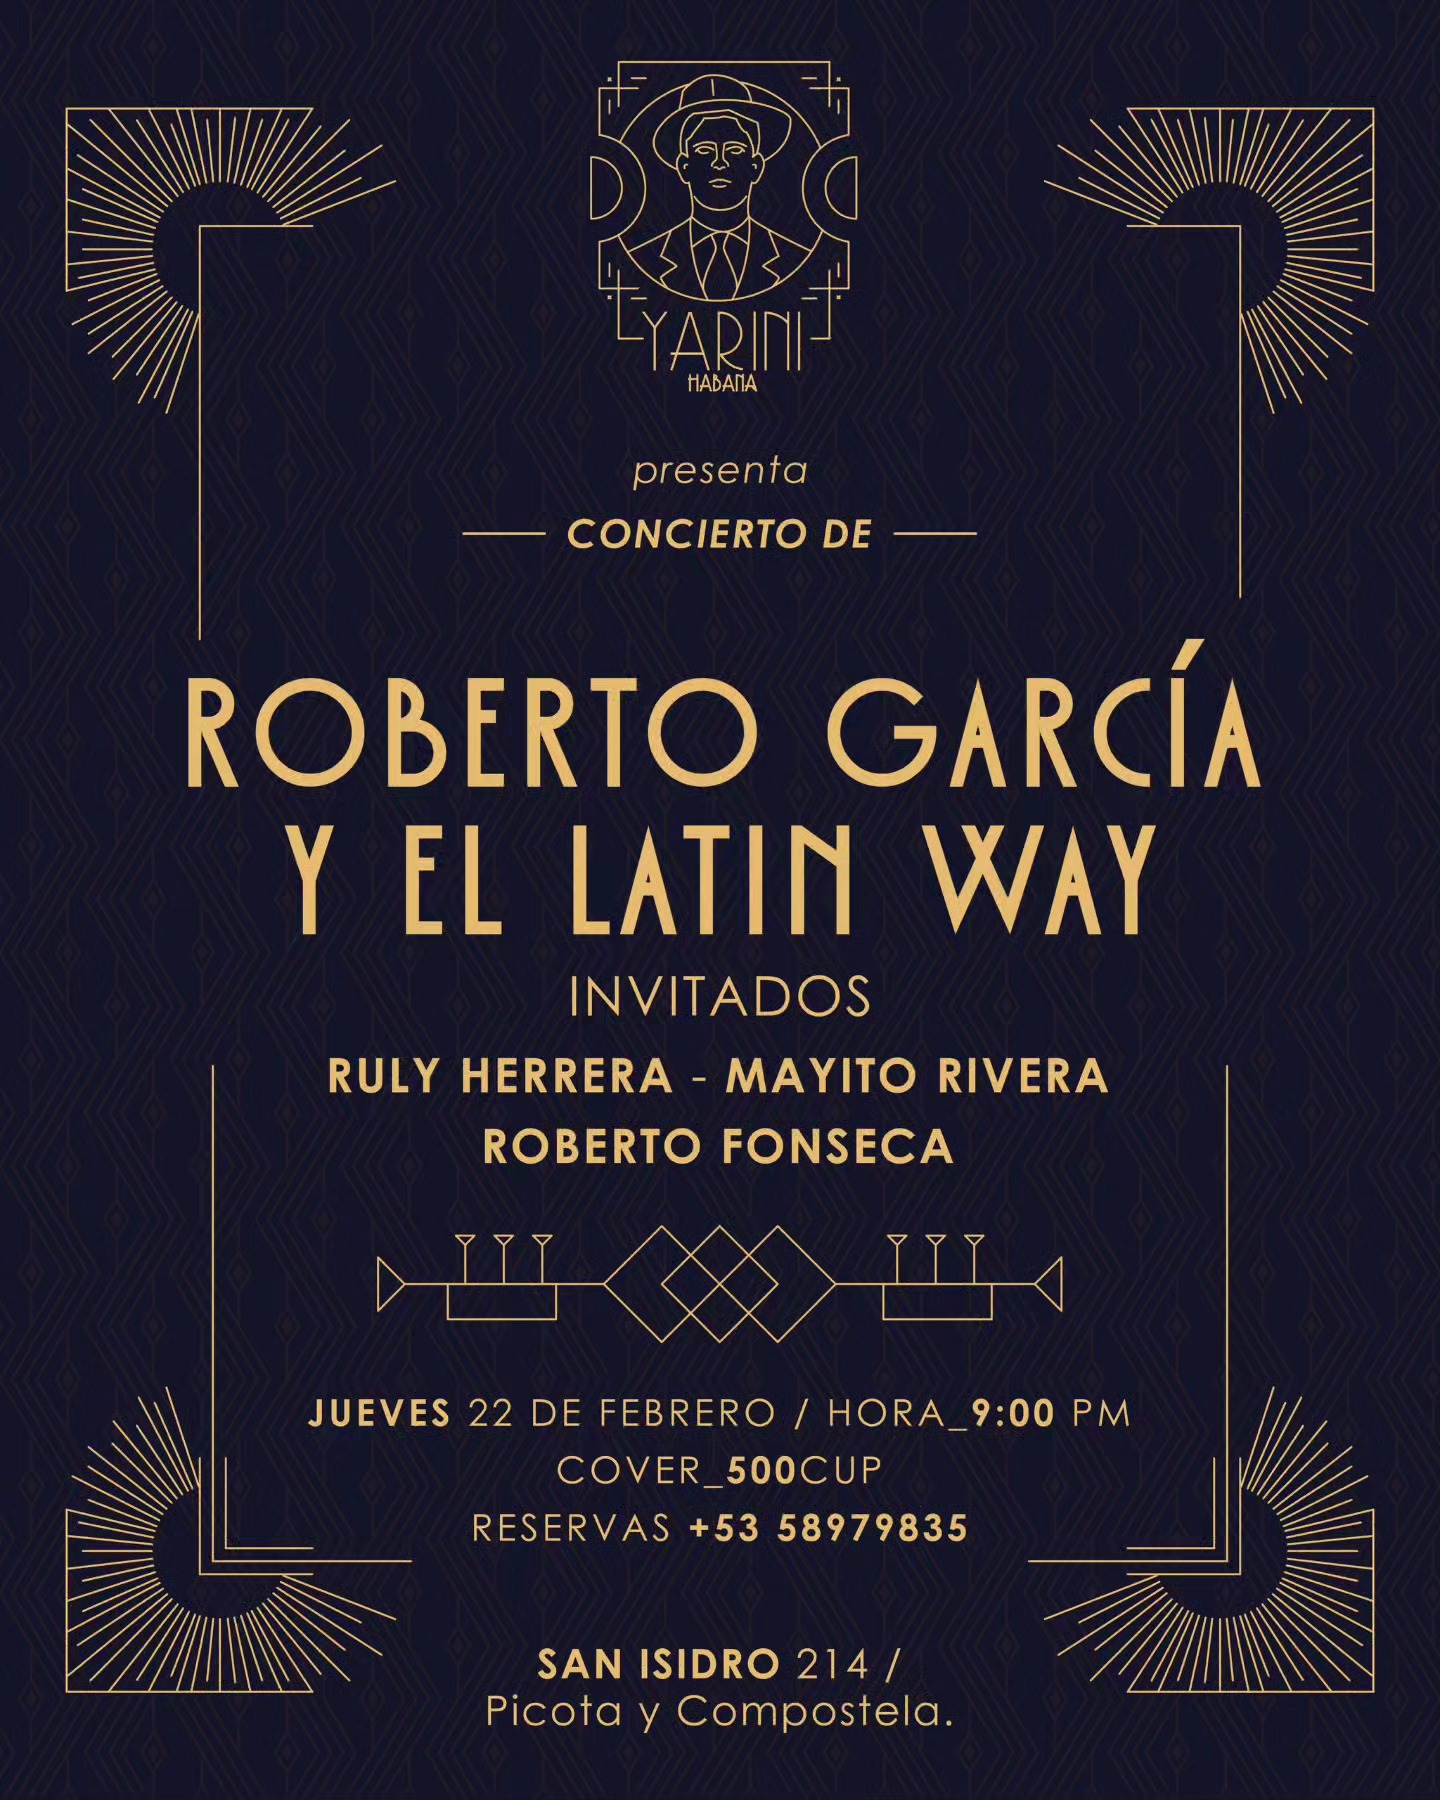 Roberto García y el Latin Way en Yarini Habana